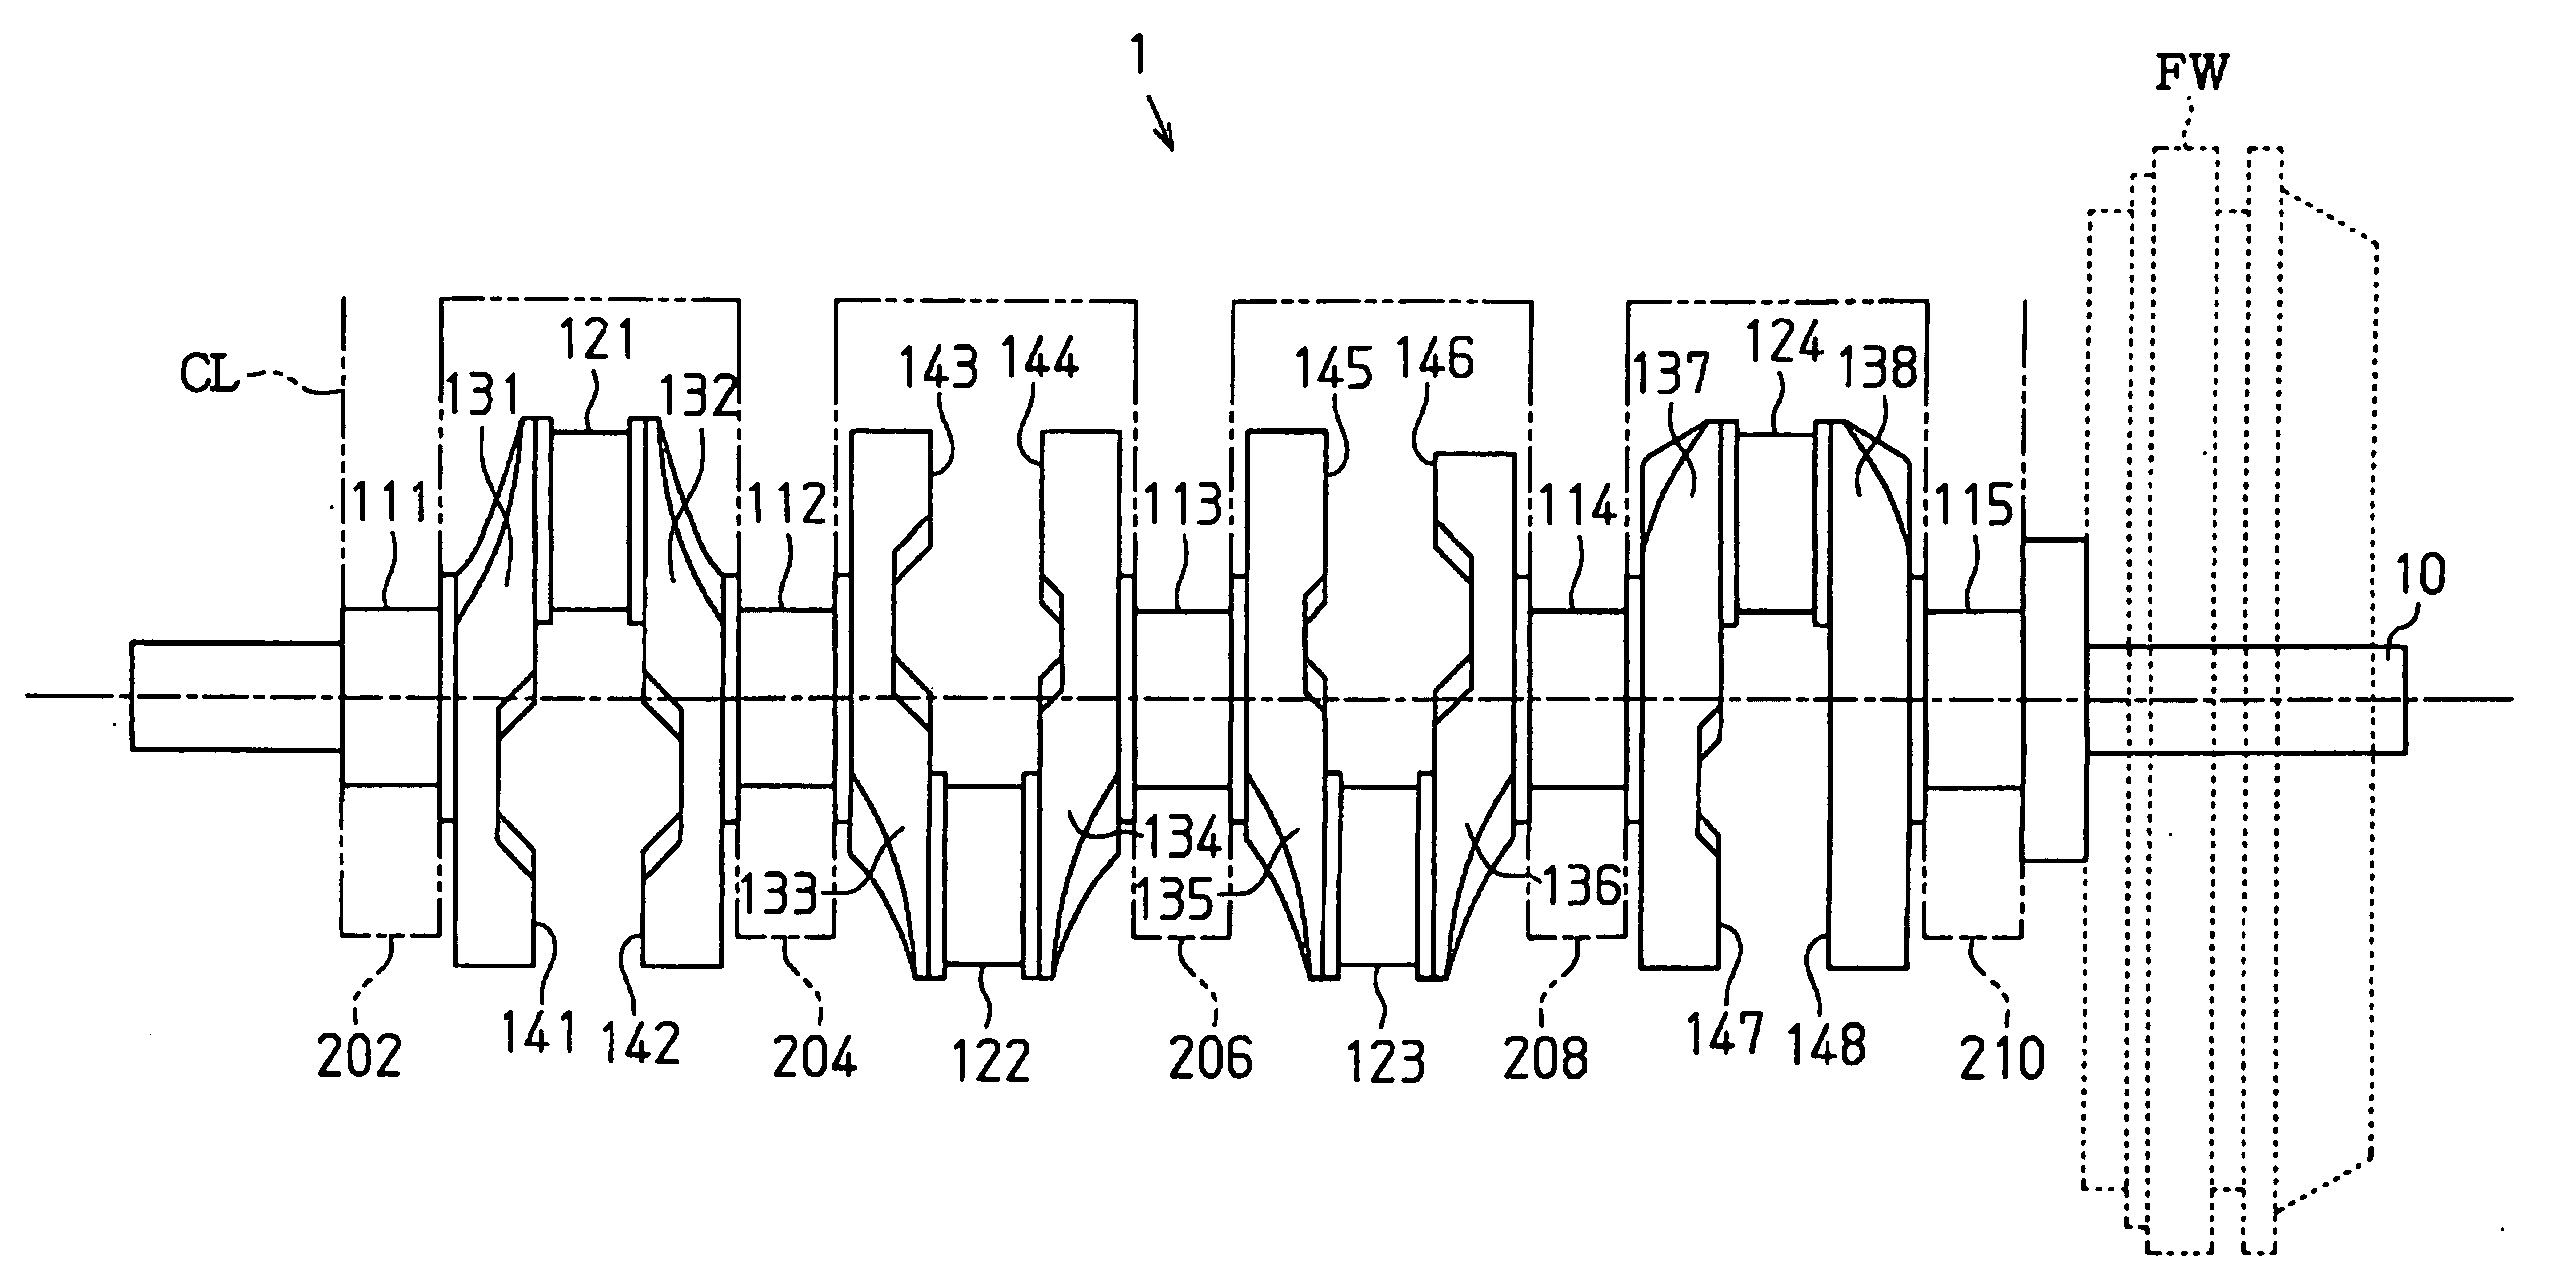 Crankshaft of in-line four-cylinder engine